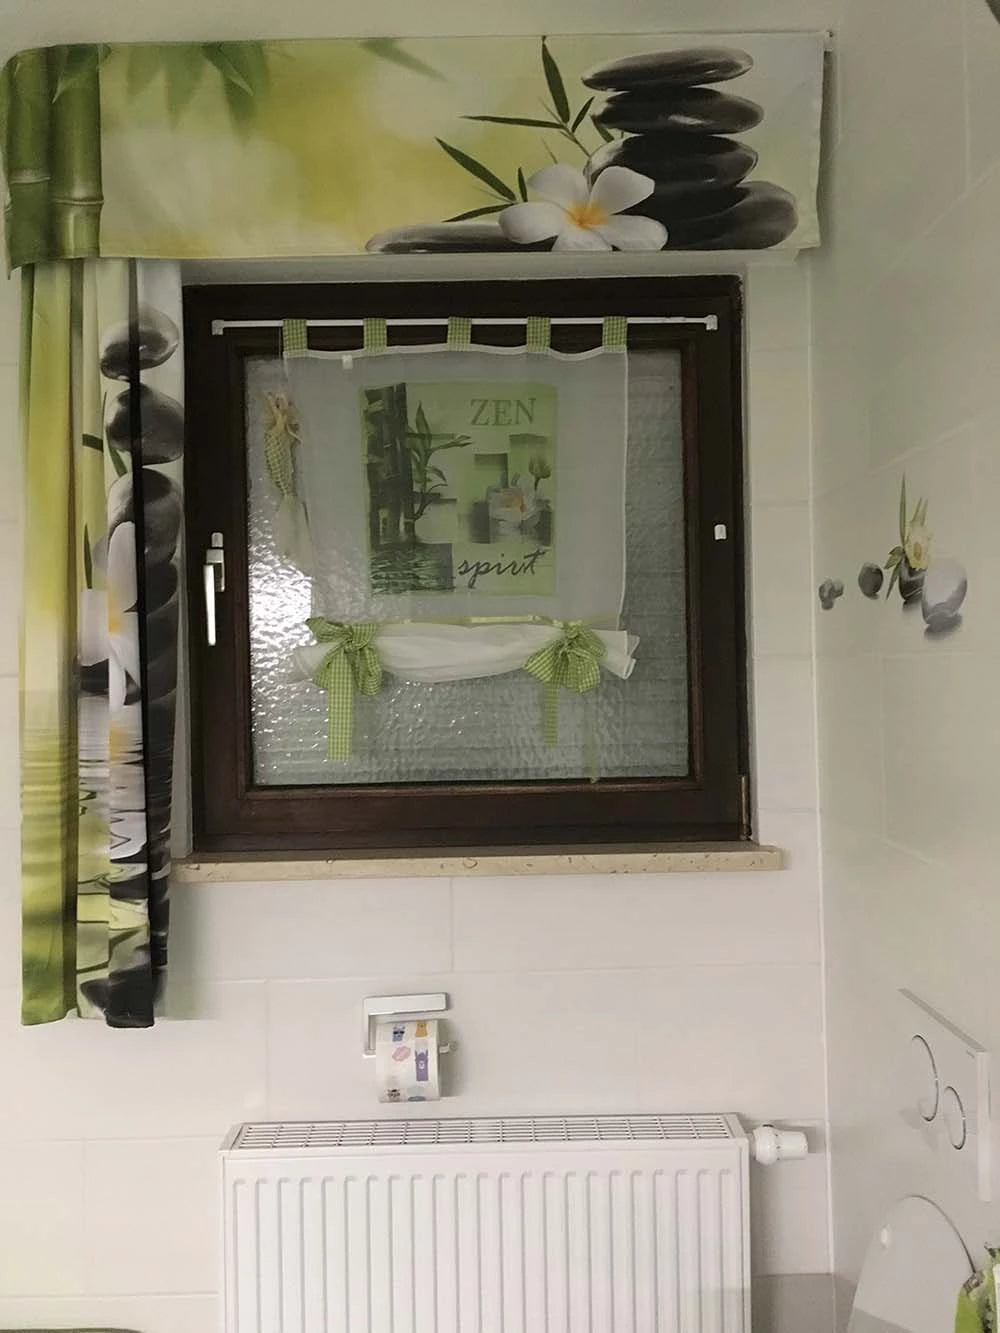 Bedruckte Fotogardine als Scheibengardine mit Spamotiv im Badezimmer am Fenster umrahmt mit passenden Vorhang mit Foto